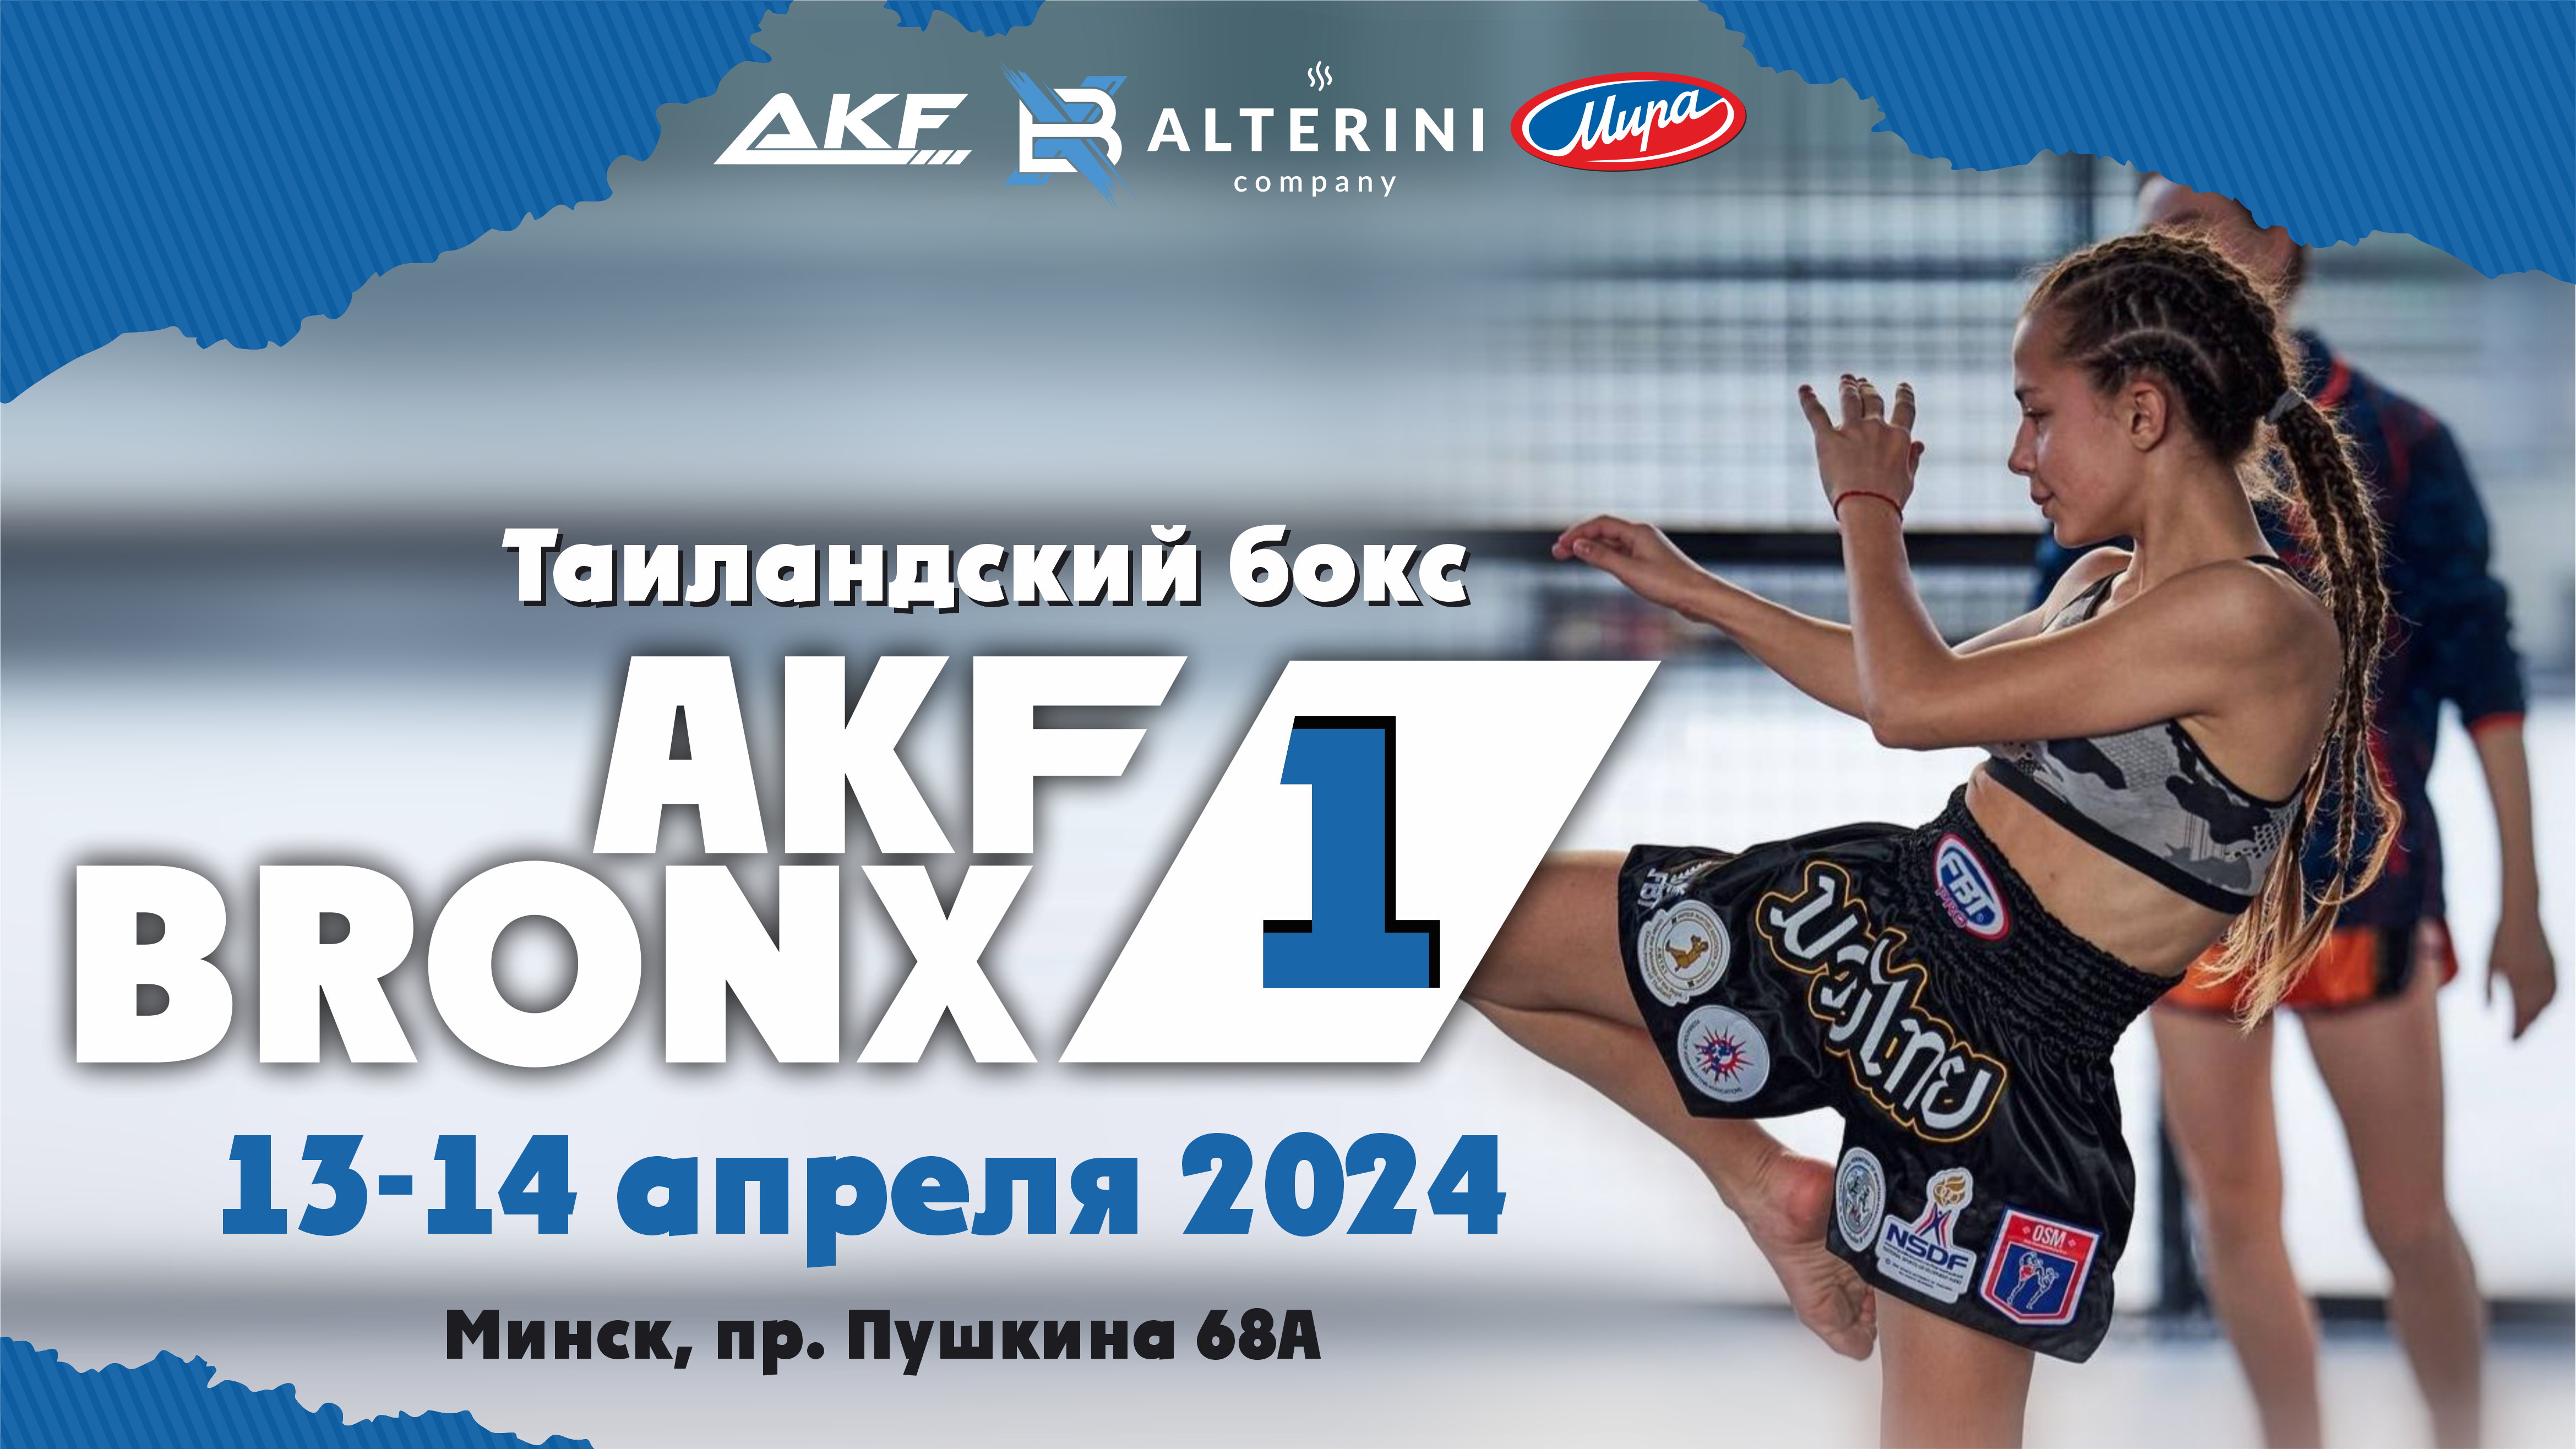 AKF BRONX 1 - старт новой серии турниров по таиландскому боксу